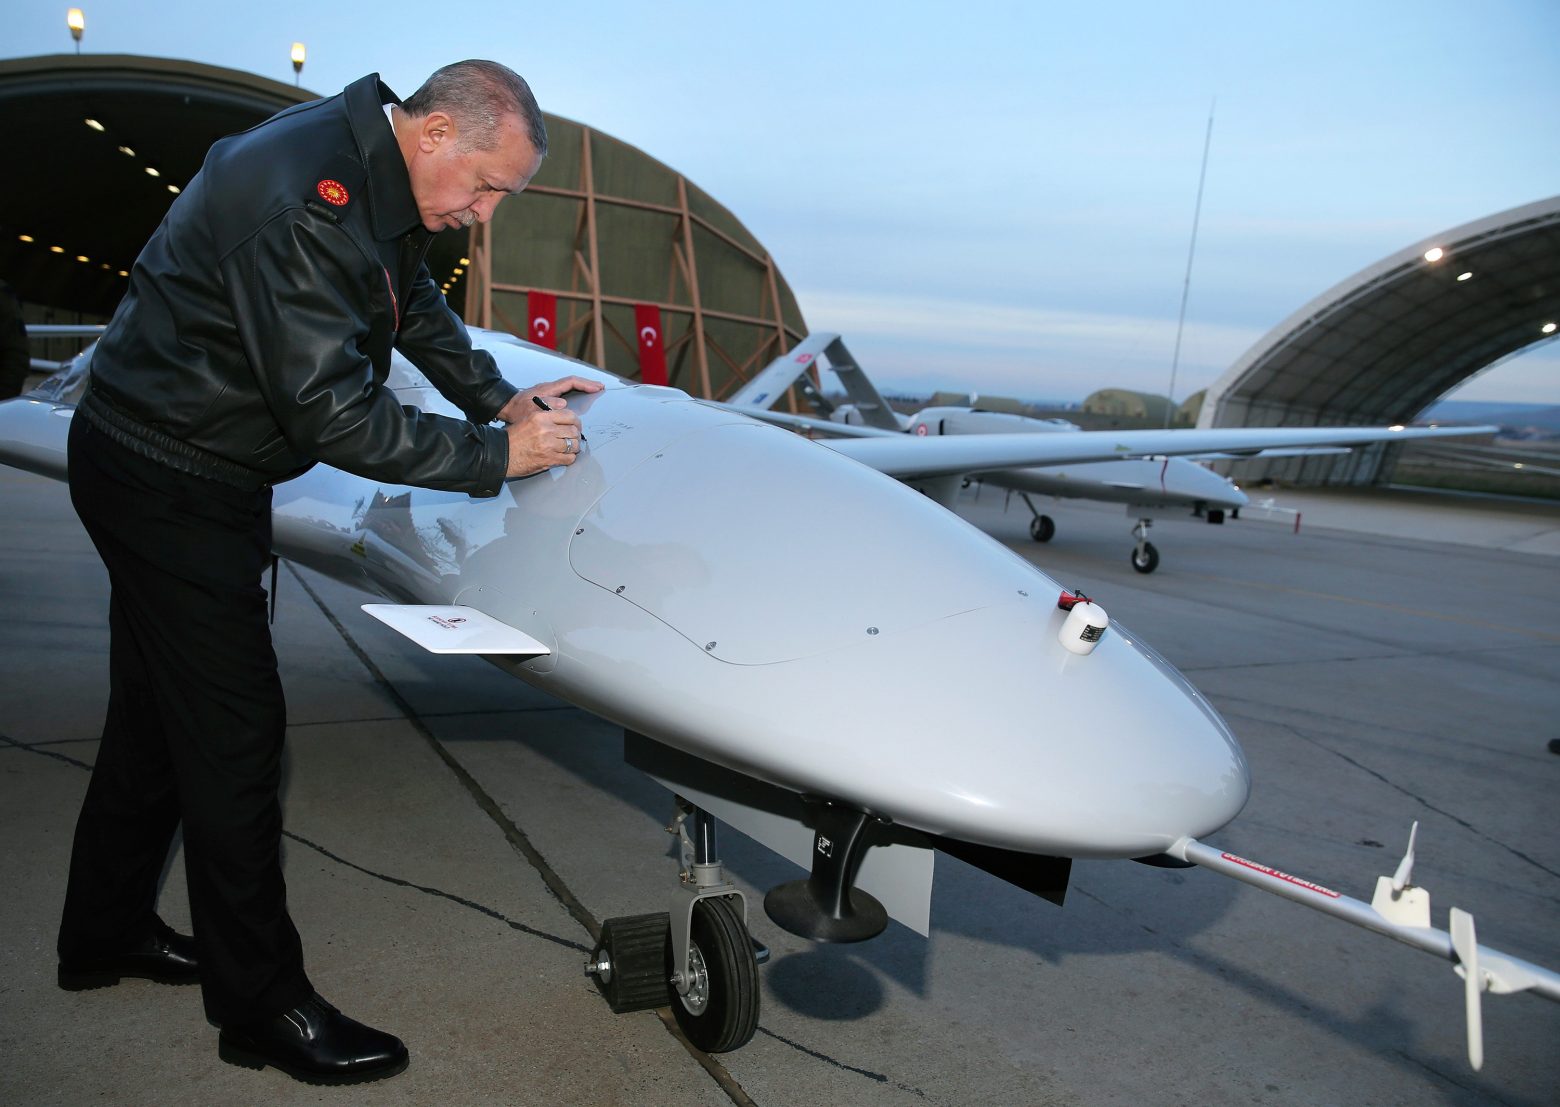 Τουρκία – Επιμένει στην επιχείρηση επιβολής των αξιώσεών της – Στέλνει και θαλάσσια drone σε Κύπρο και Αιγαίο